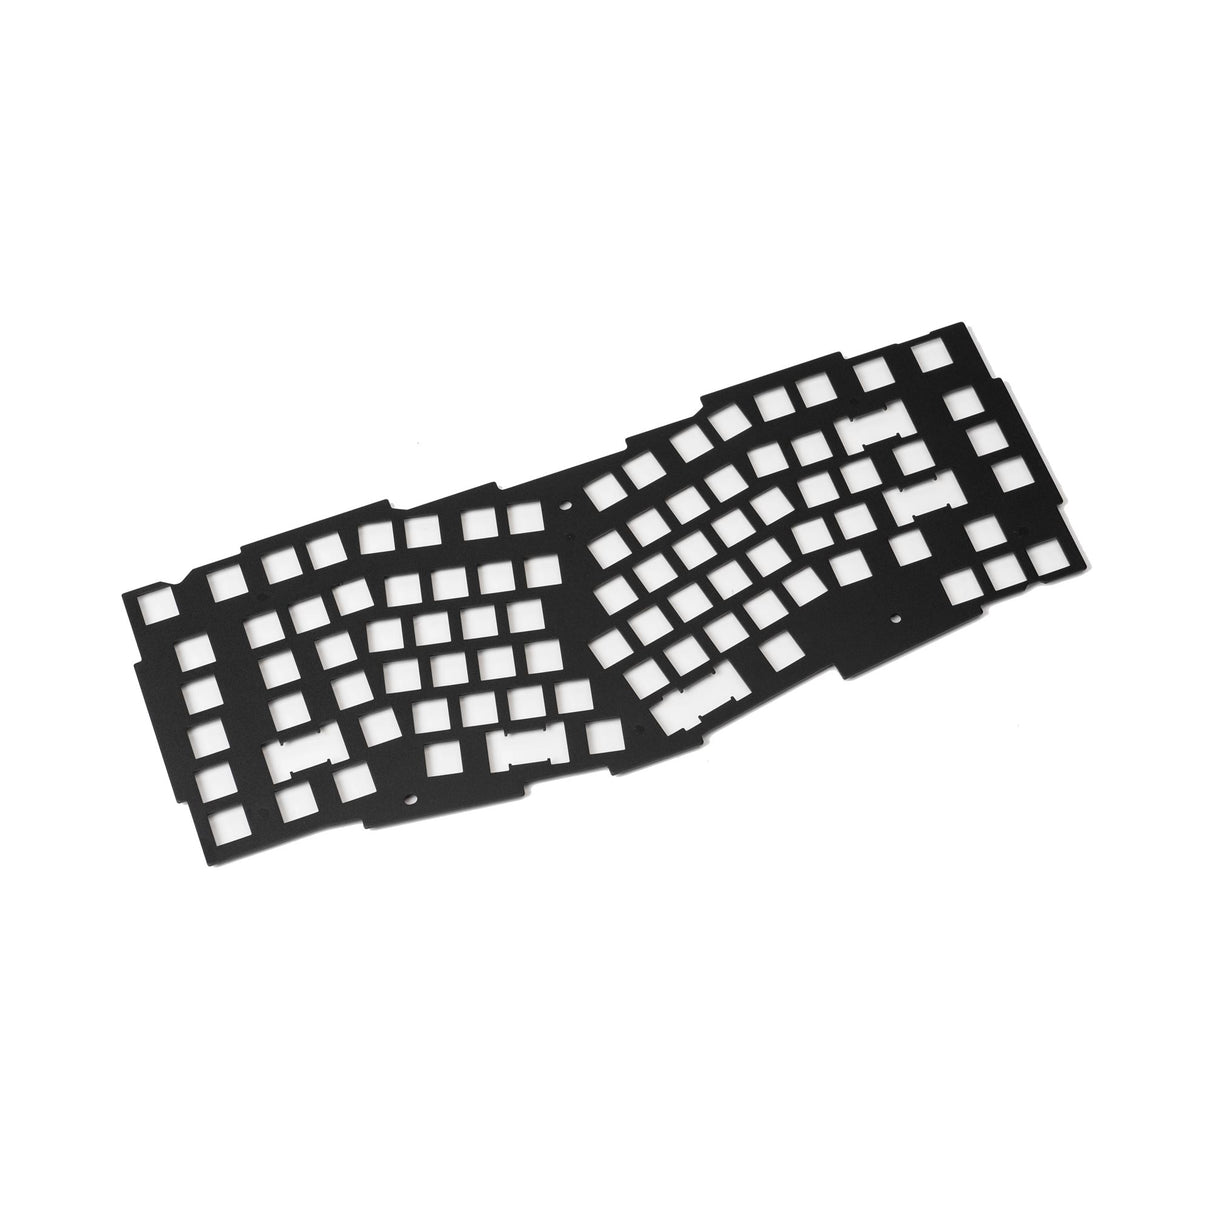 Keychron Q10 Keyboard ANSI Layout Aluminum Plate